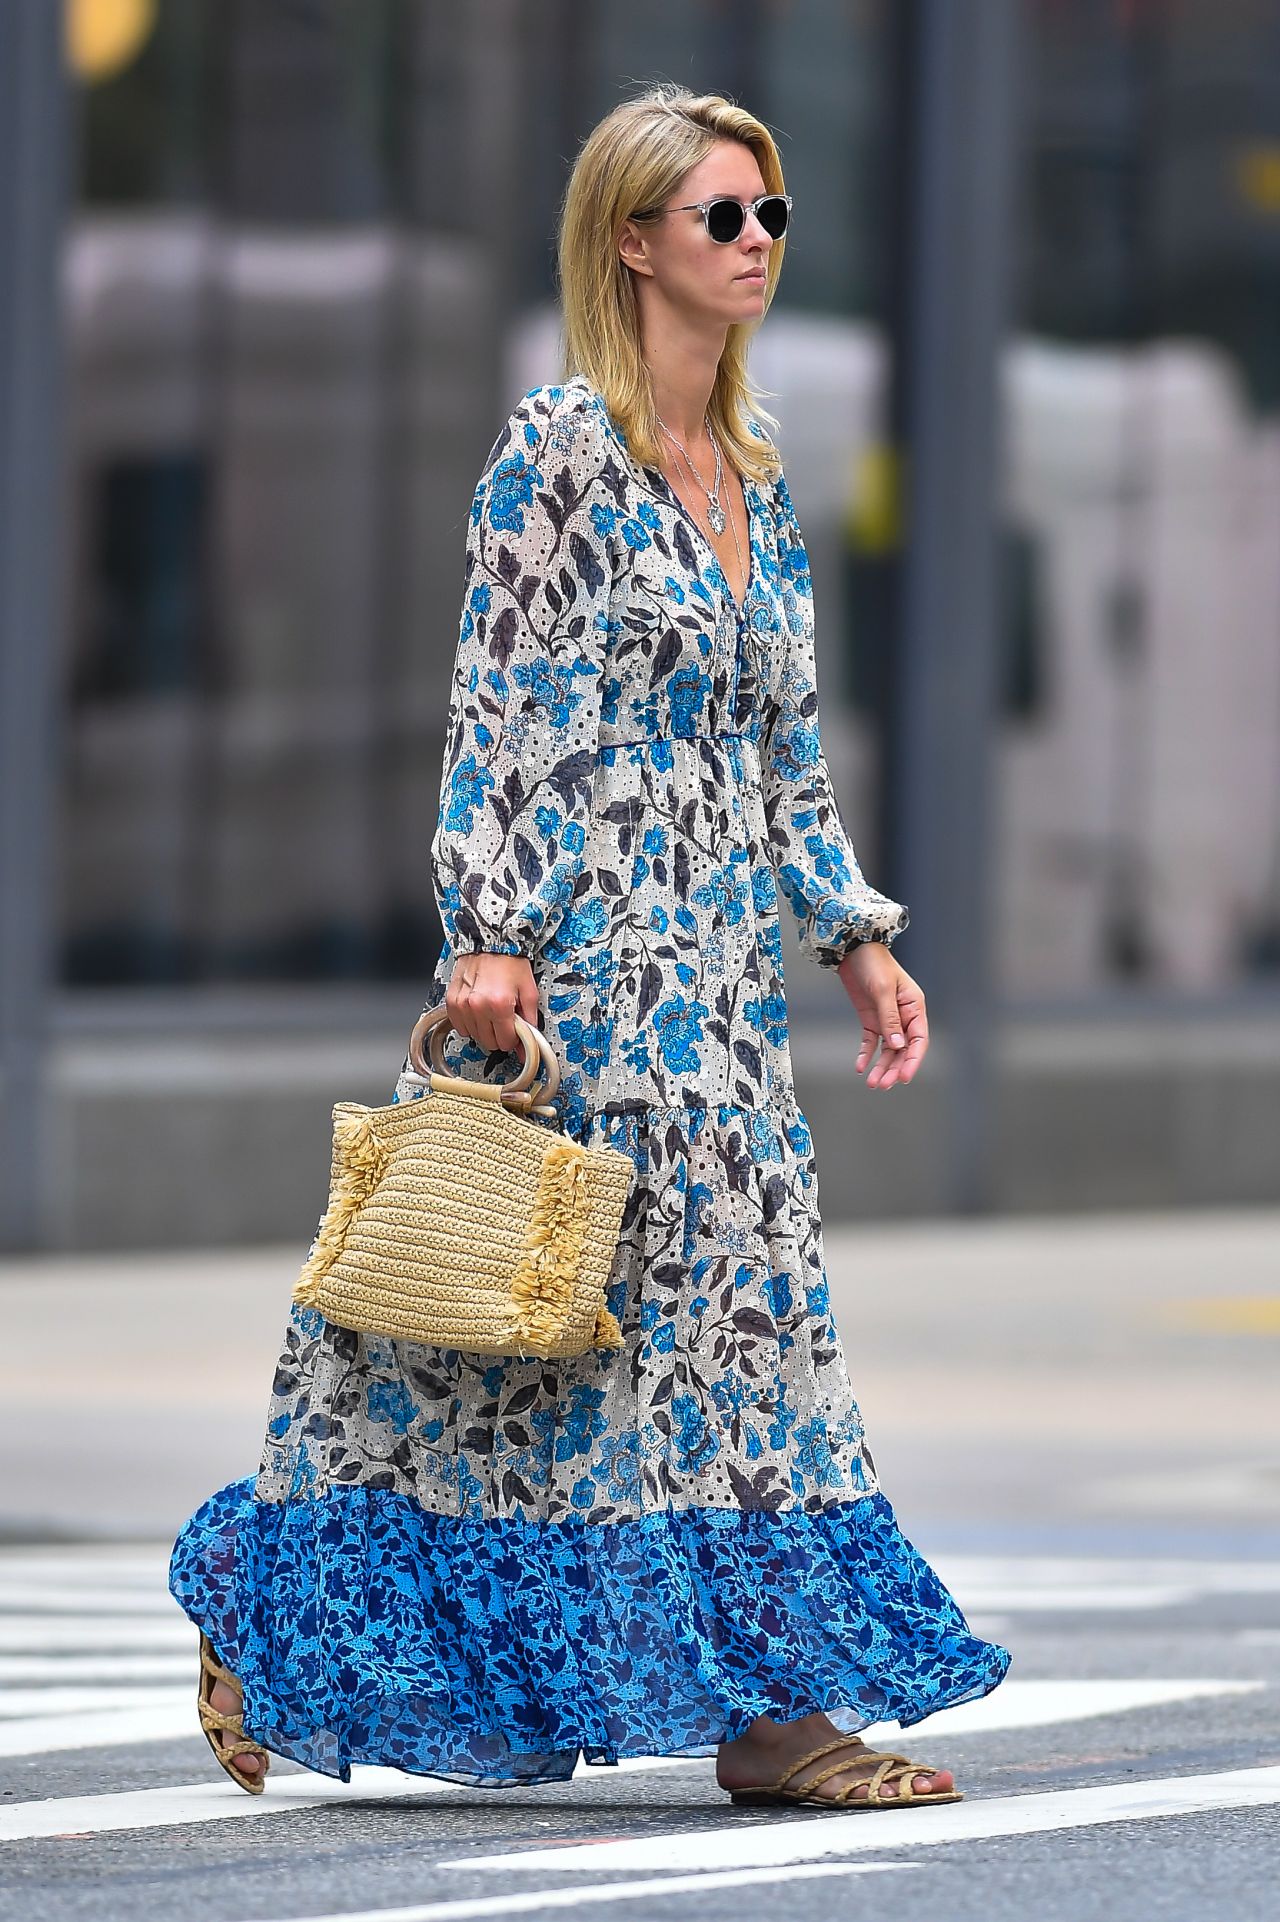 Nicky Hilton in a Floral Dress - New York 07/29/2021 • CelebMafia